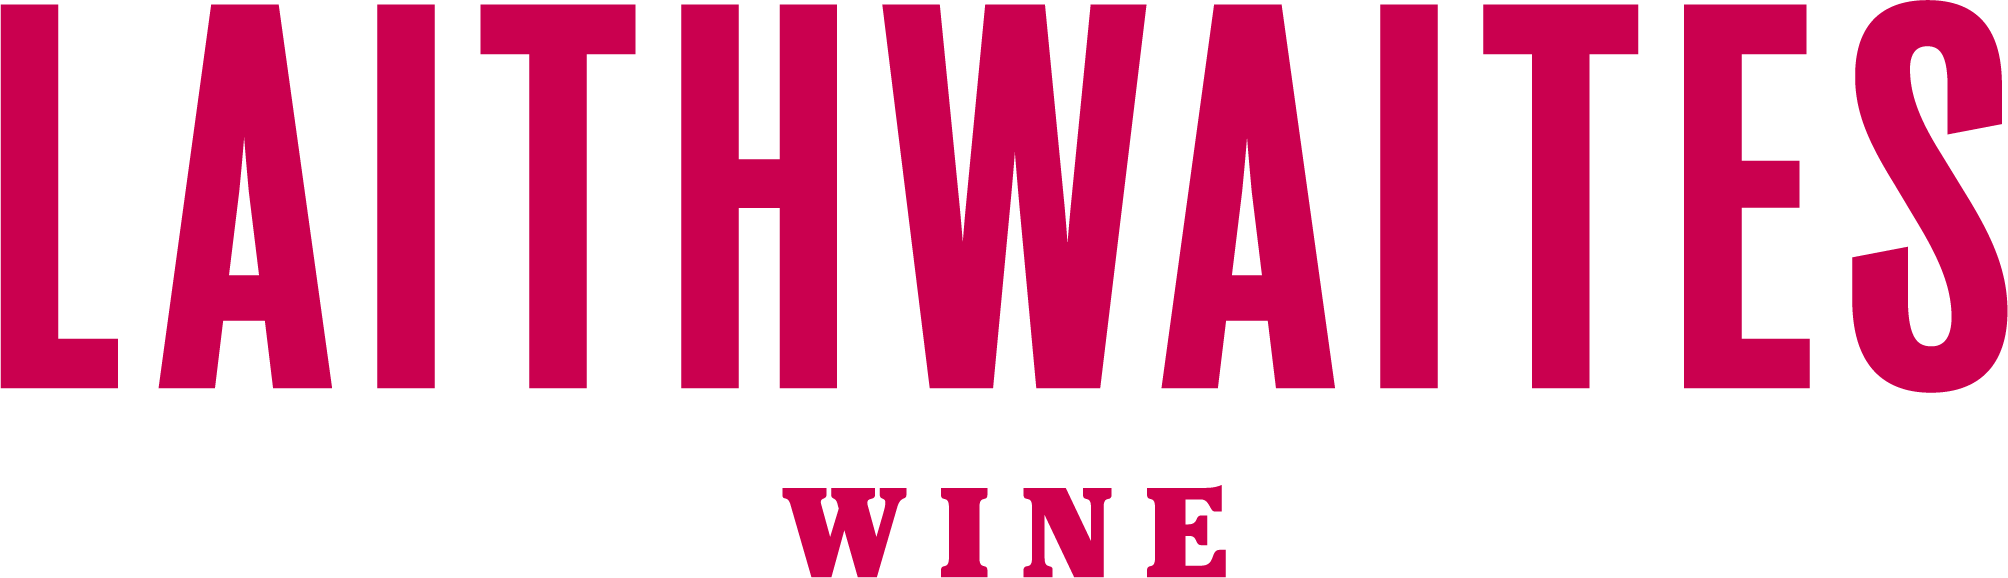 logo for Laithwaite's